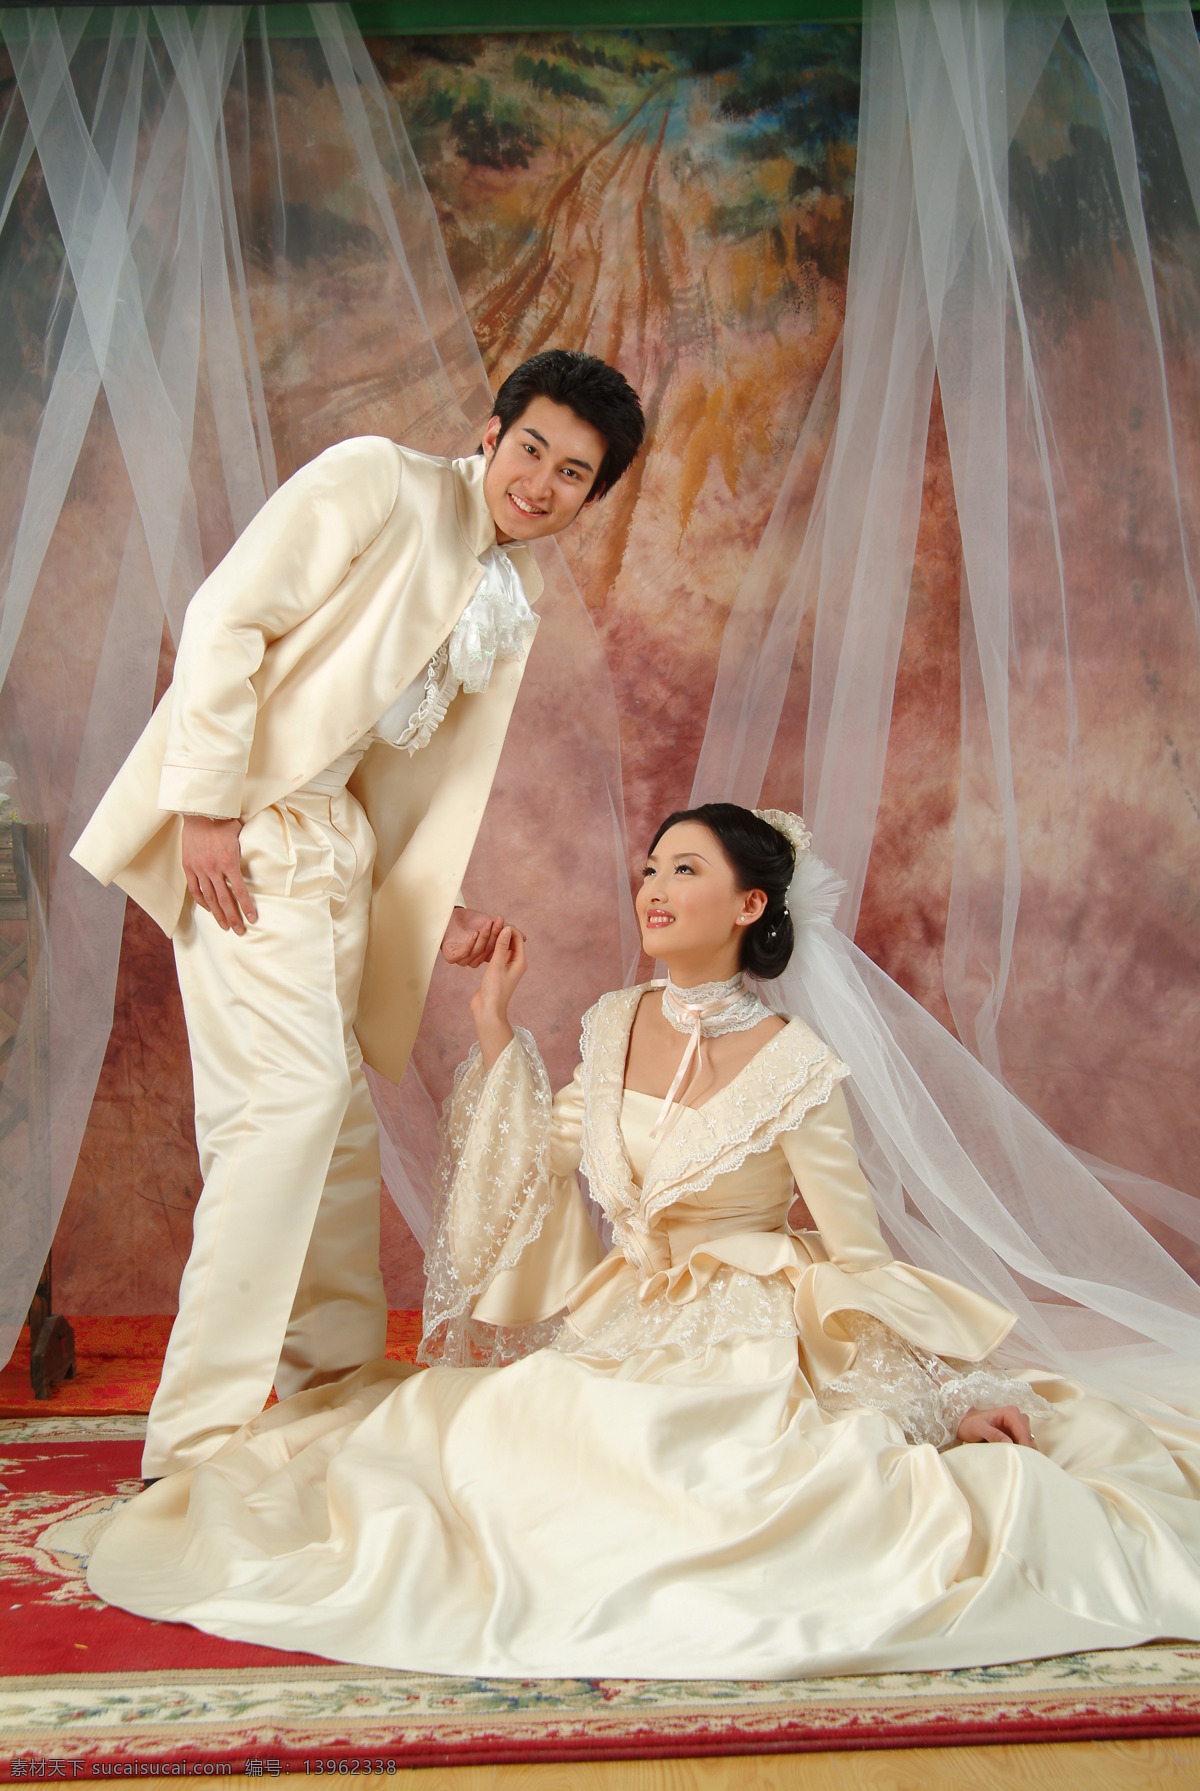 香港写真 婚纱照 美女 新娘 新郎 红地毯 花朵 笑容 西装 婚纱摄影 香港 婚纱 二 人物摄影 人物图库